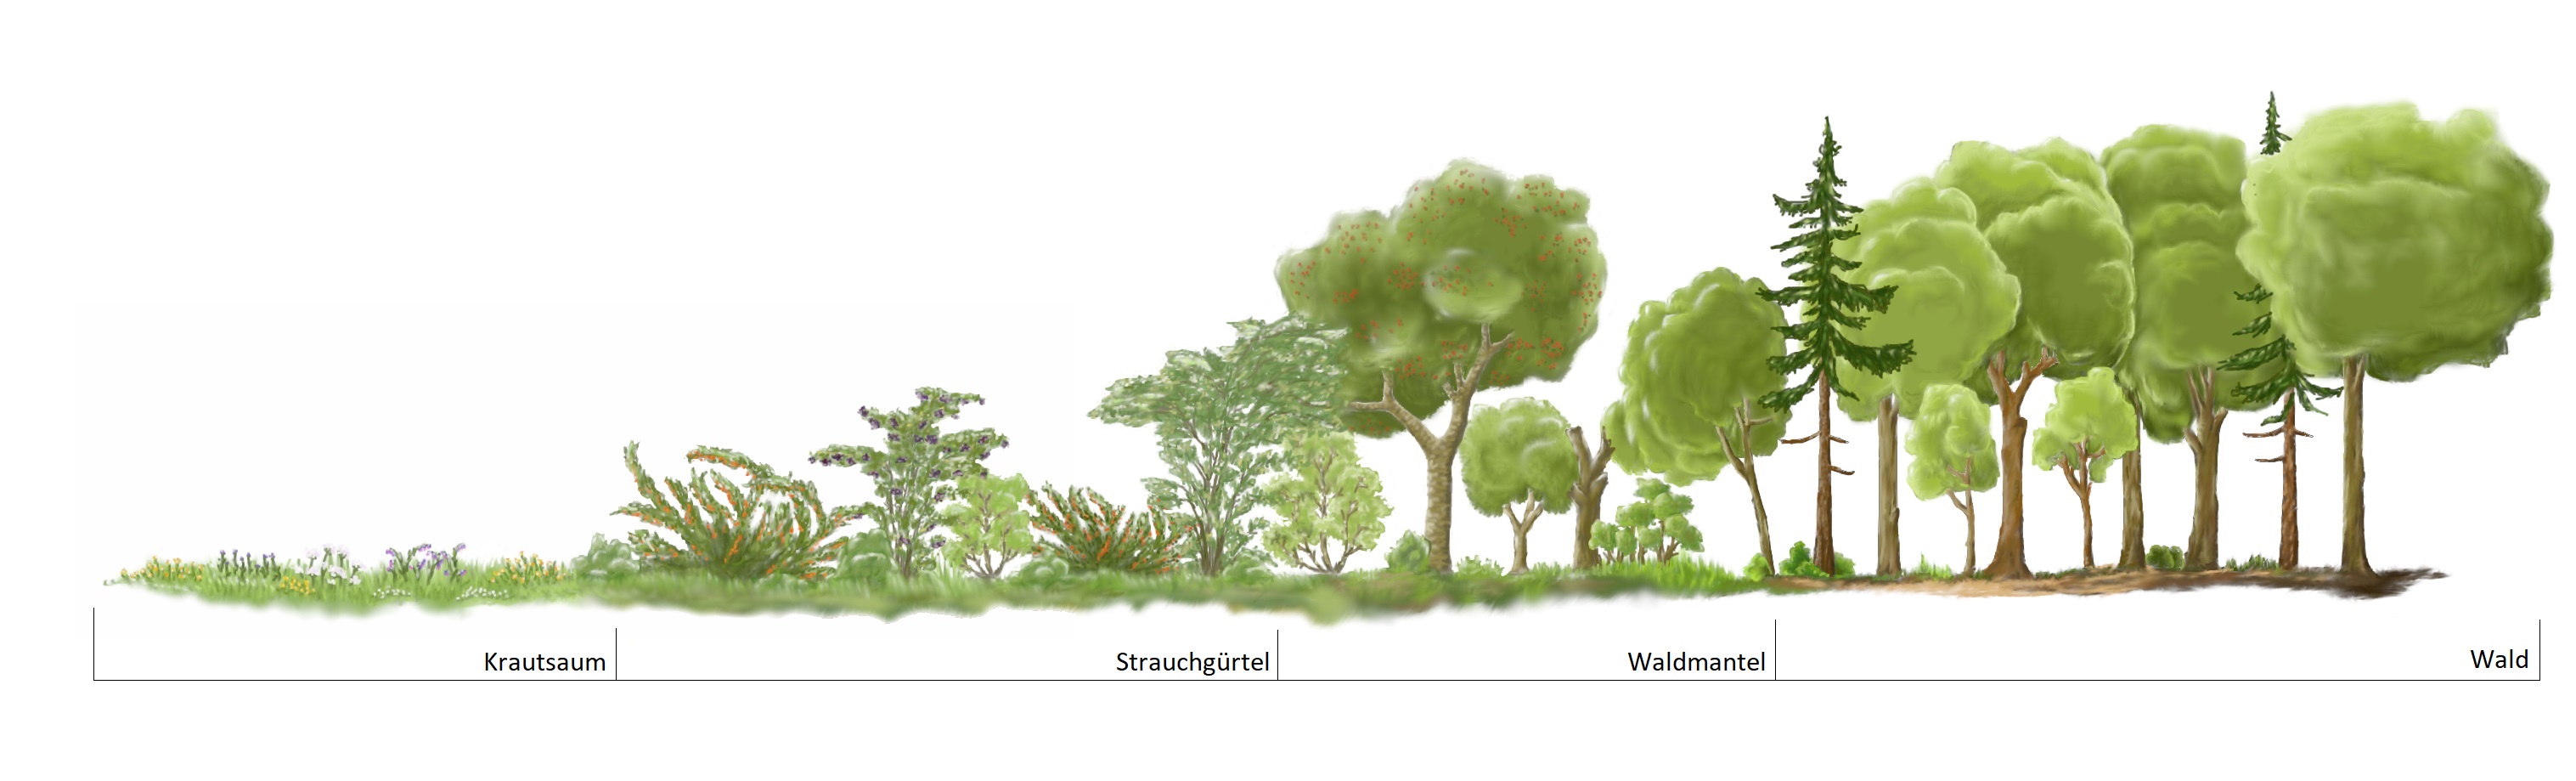 Schematische Darstellung des Waldrandes mit Sträuchern und Bäumen